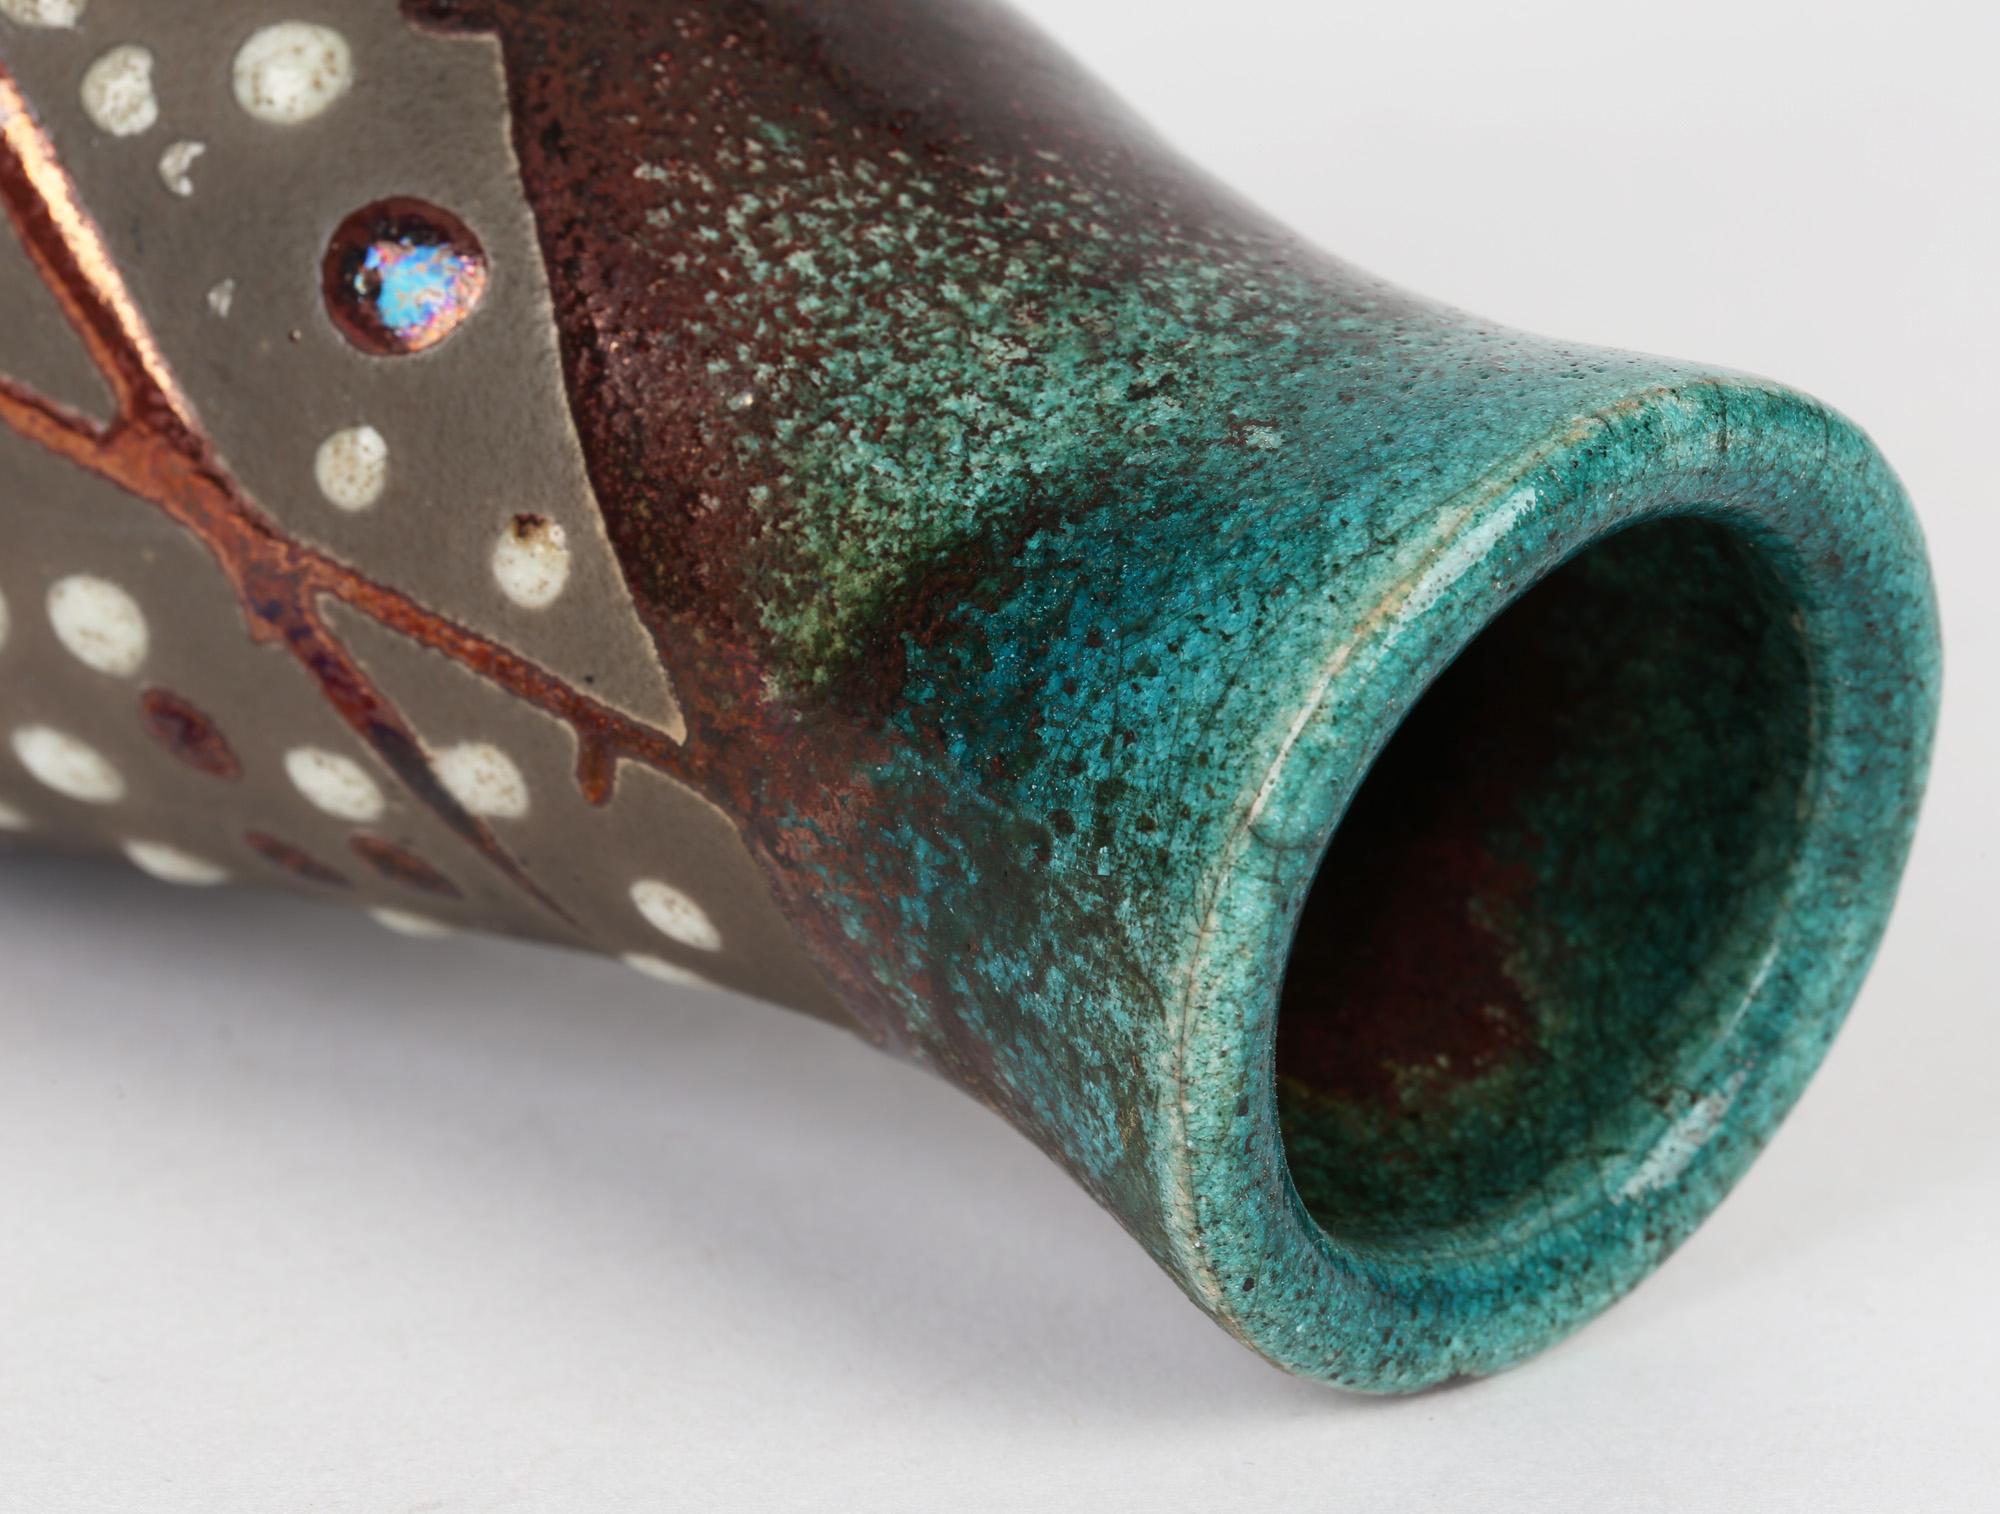 Un très élégant vase raku en poterie de Studio appliqué avec des glaçures métalliques cuivrées, signé et datant du 20ème siècle. Le vase, de forme conique arrondie, repose sur une large base plate et arrondie, le corps se rétrécissant jusqu'à un